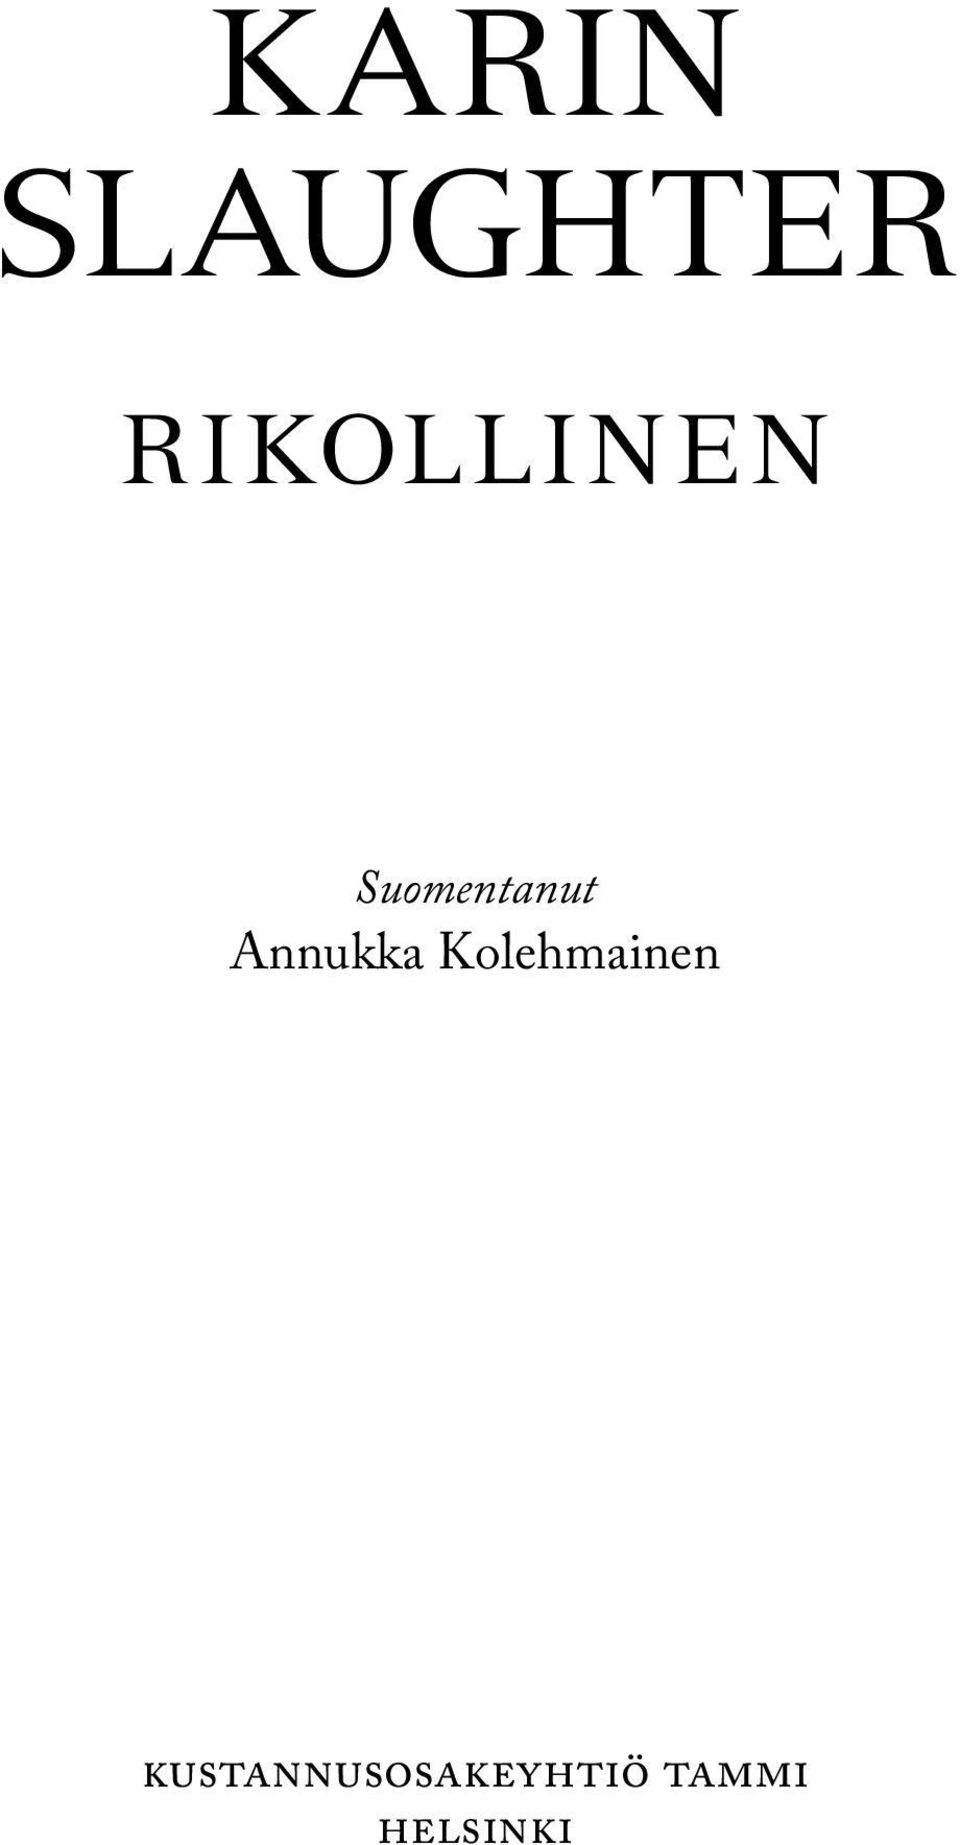 Annukka Kolehmainen